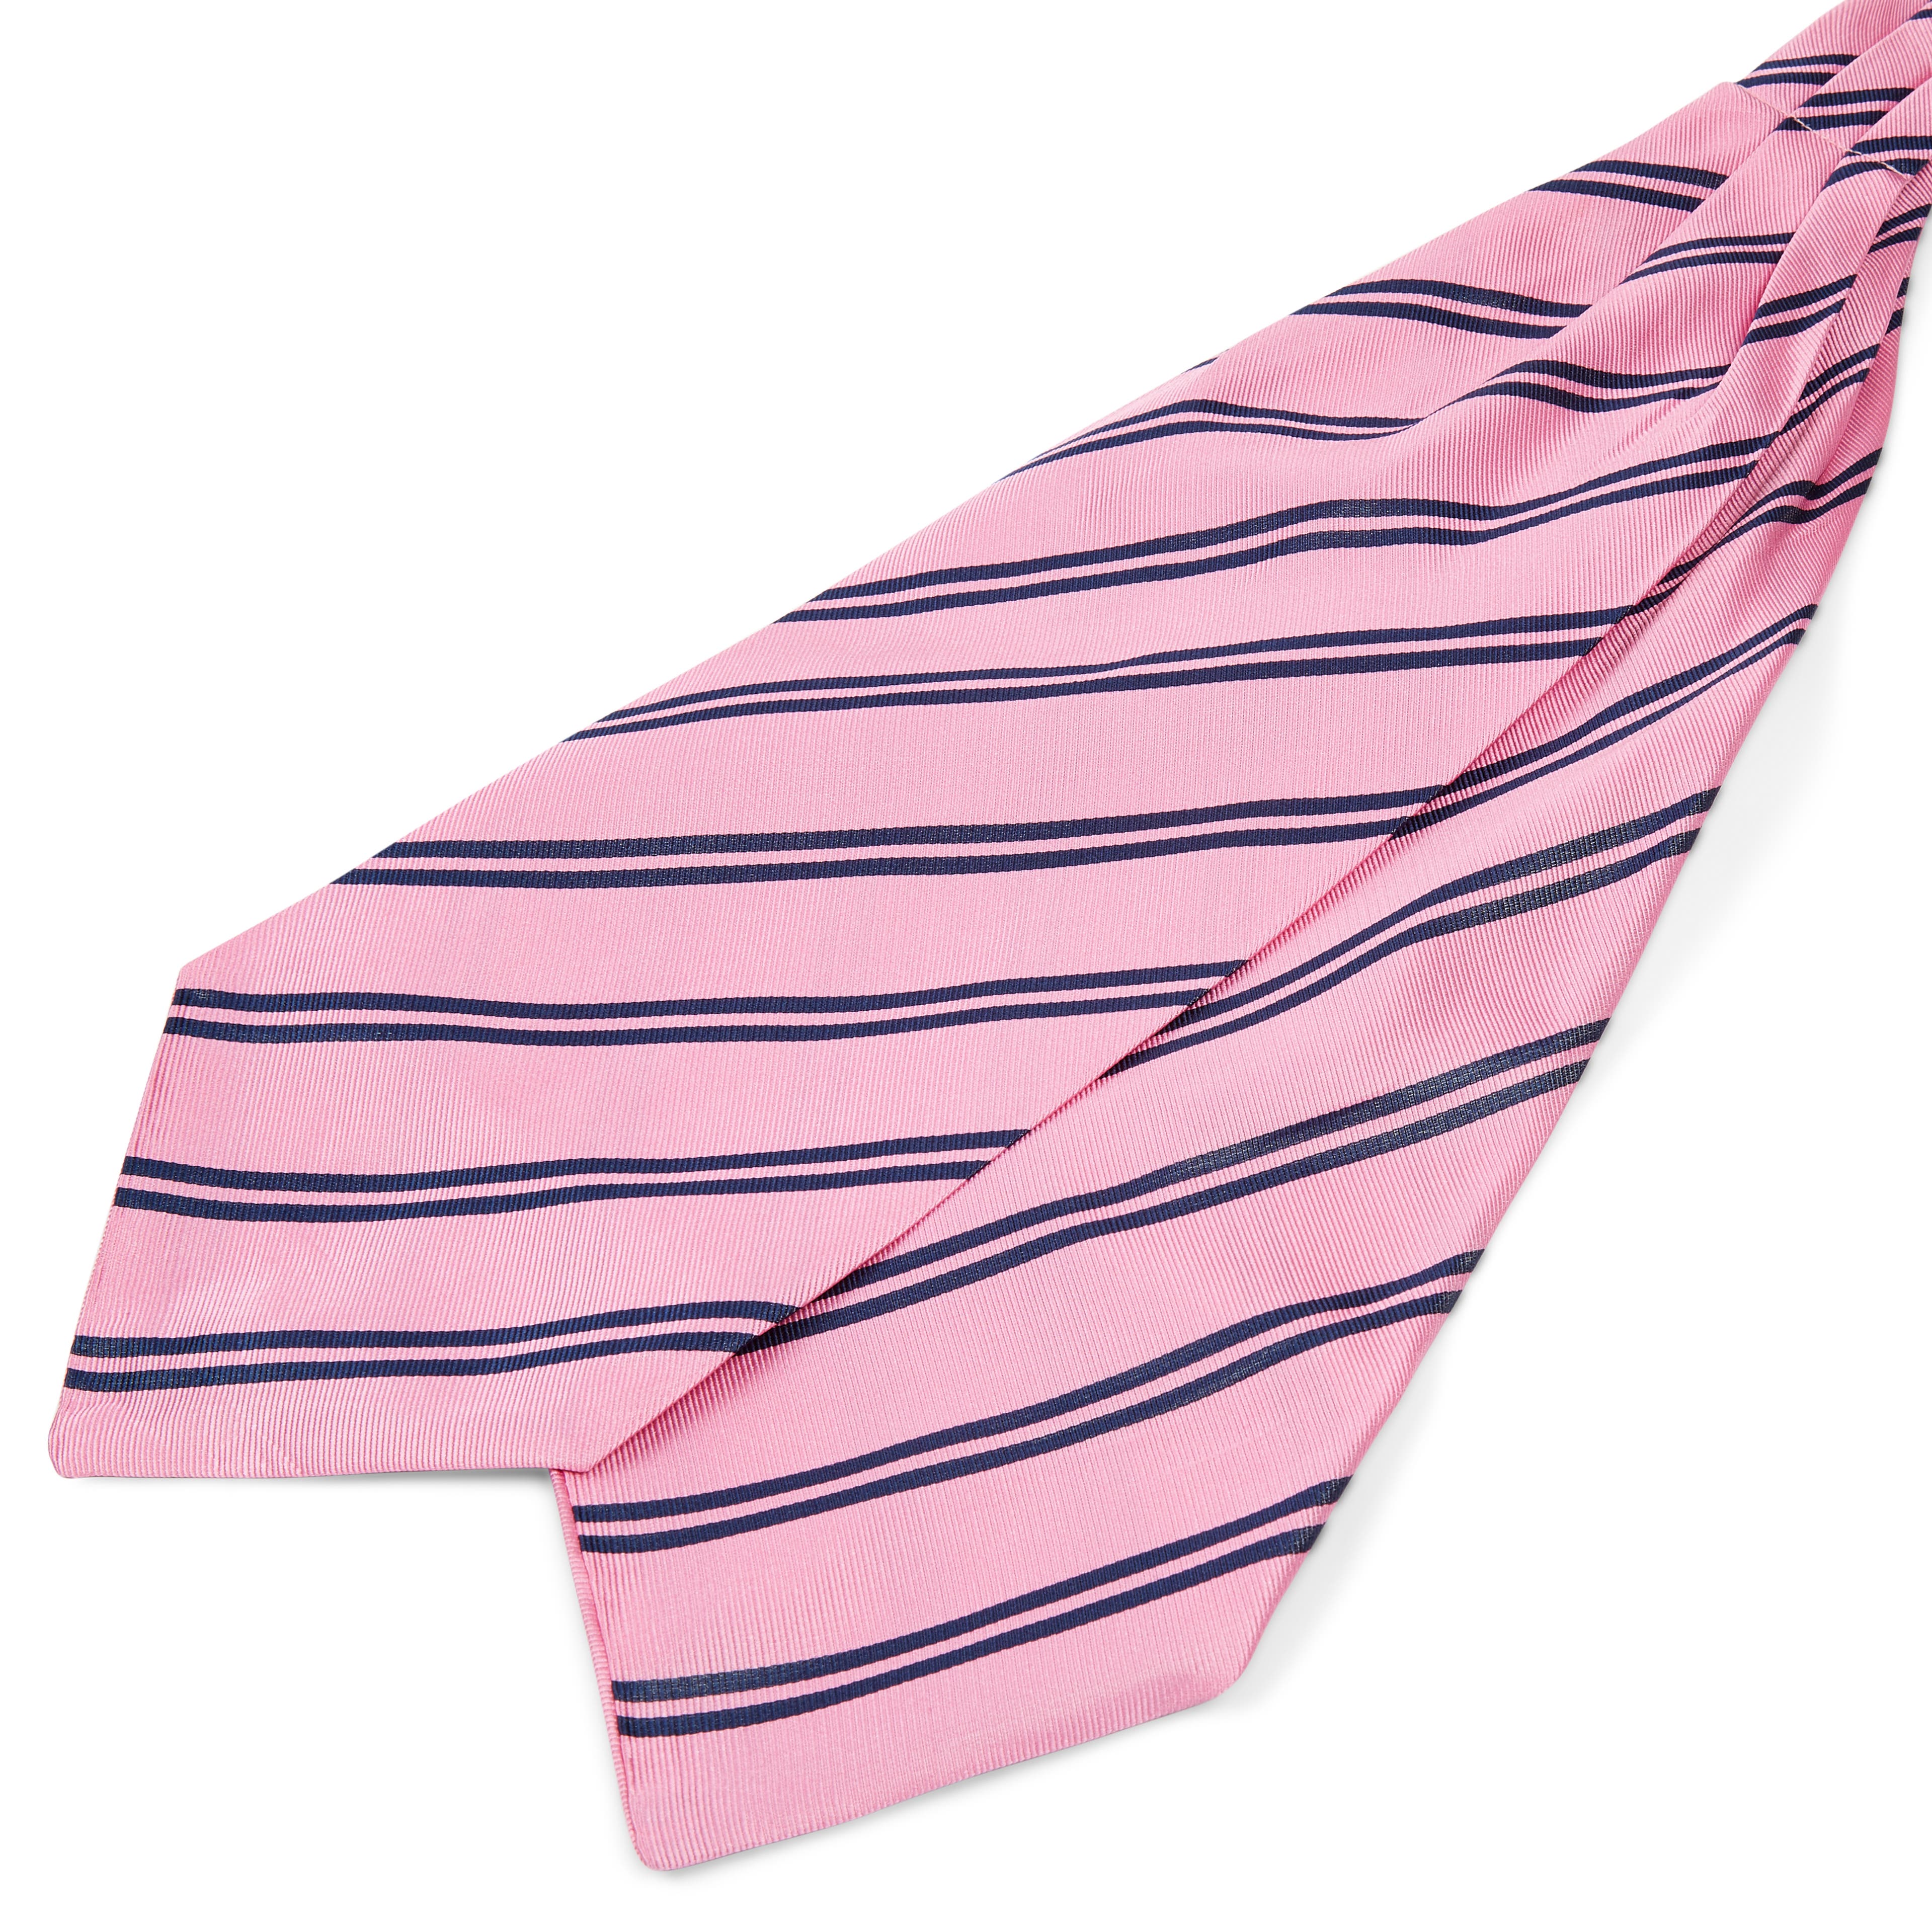 Cravatta ascot in seta rosa con doppie righe blu navy